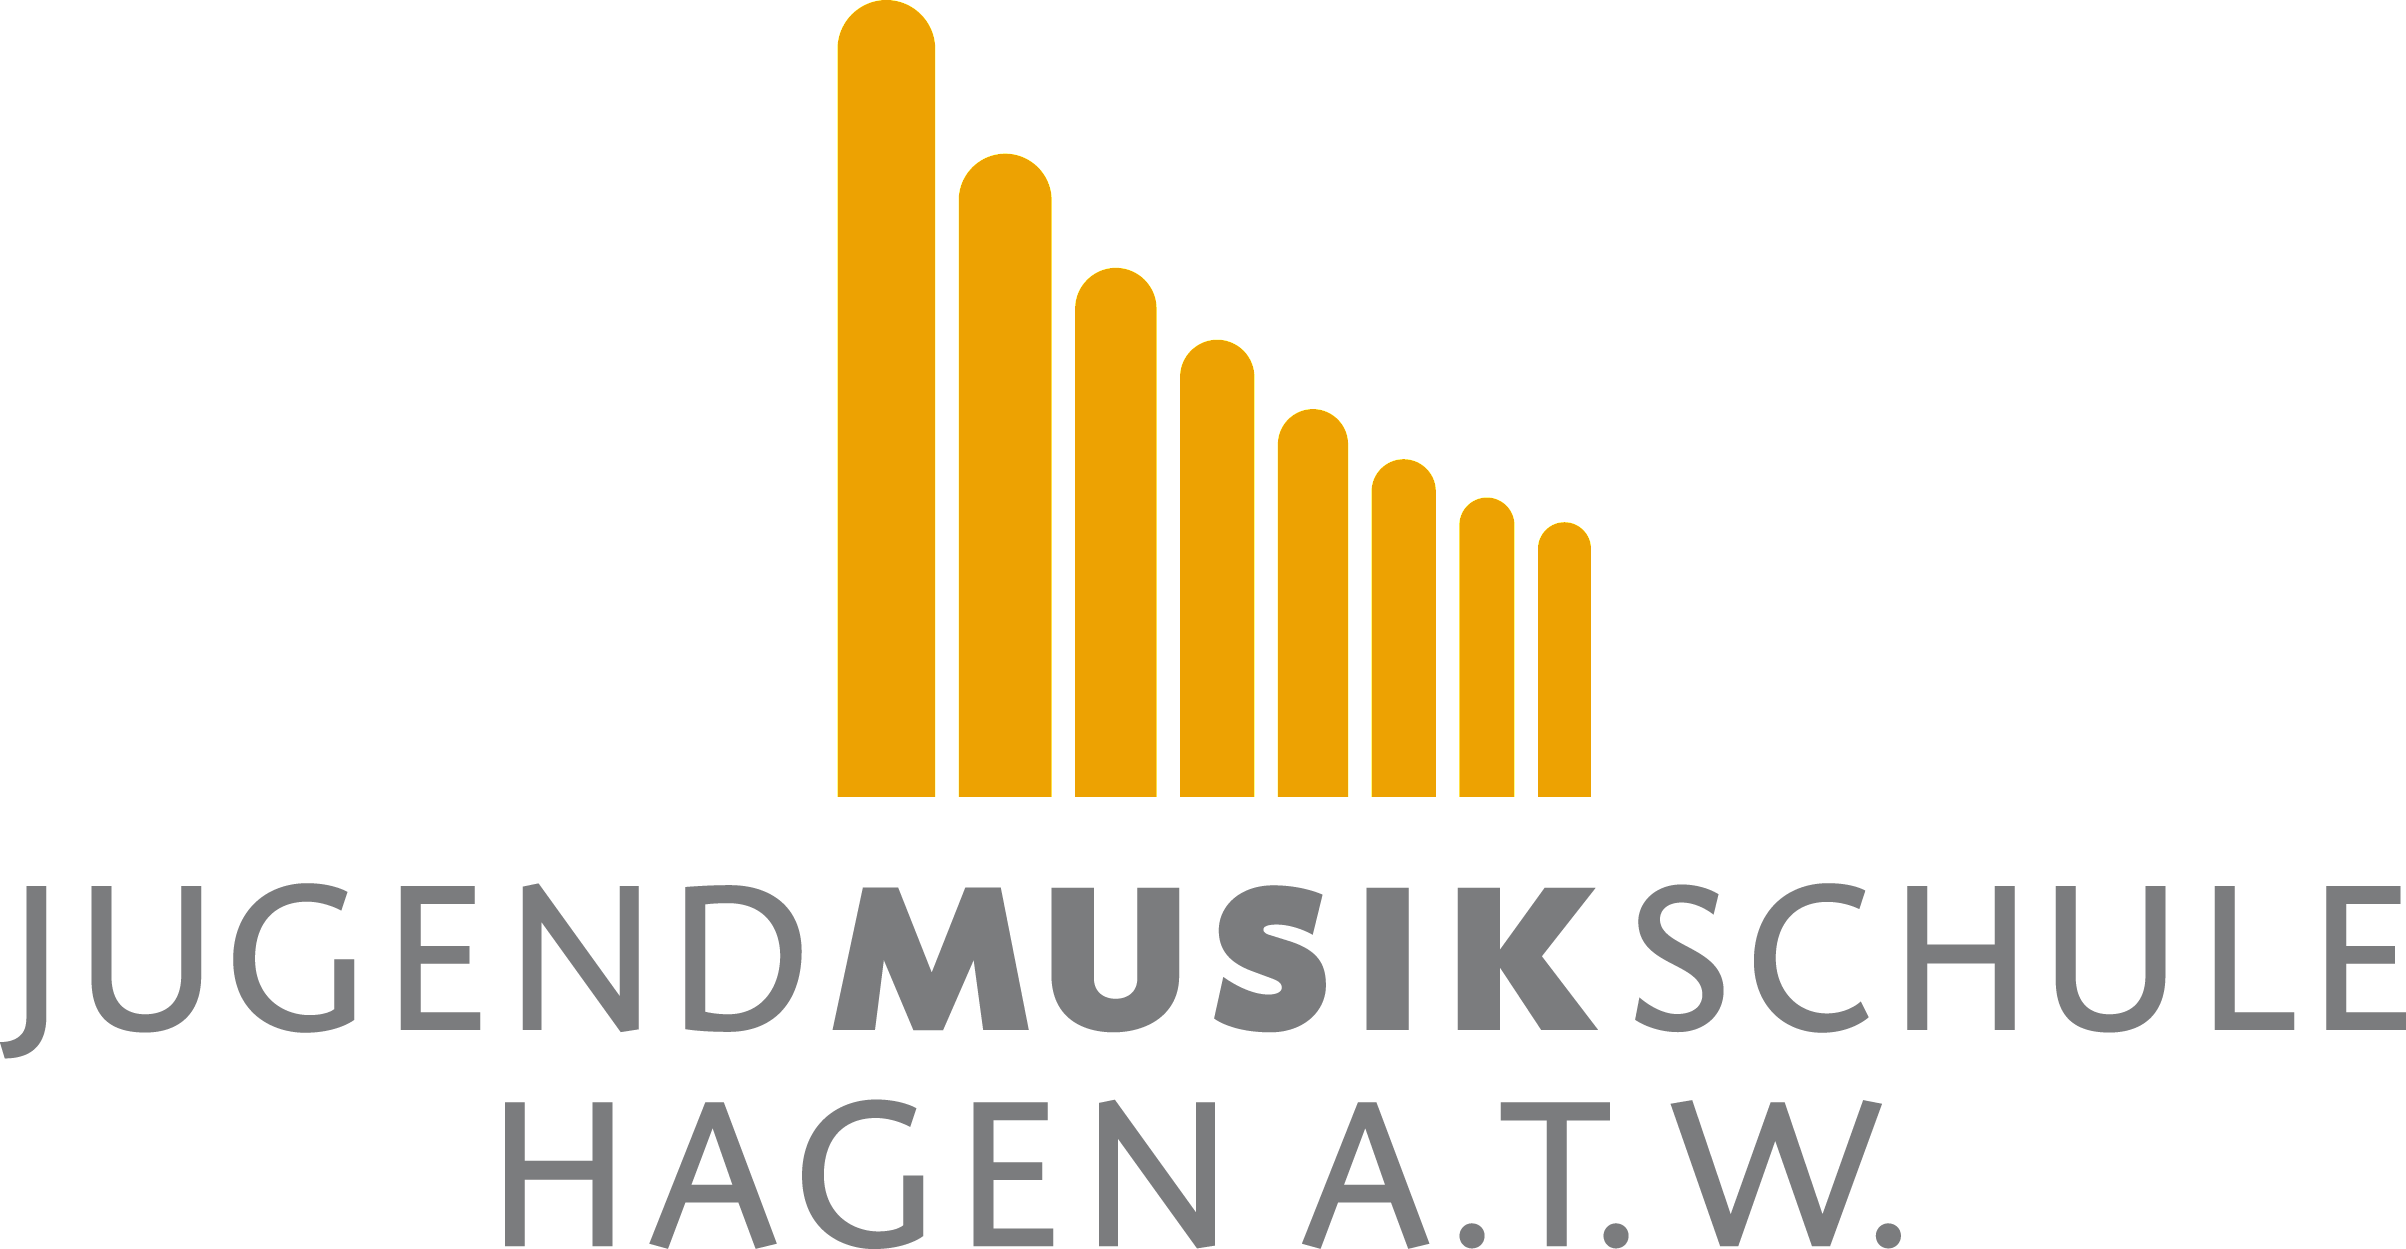 Jugendmusikschule Hagen a.T.W.